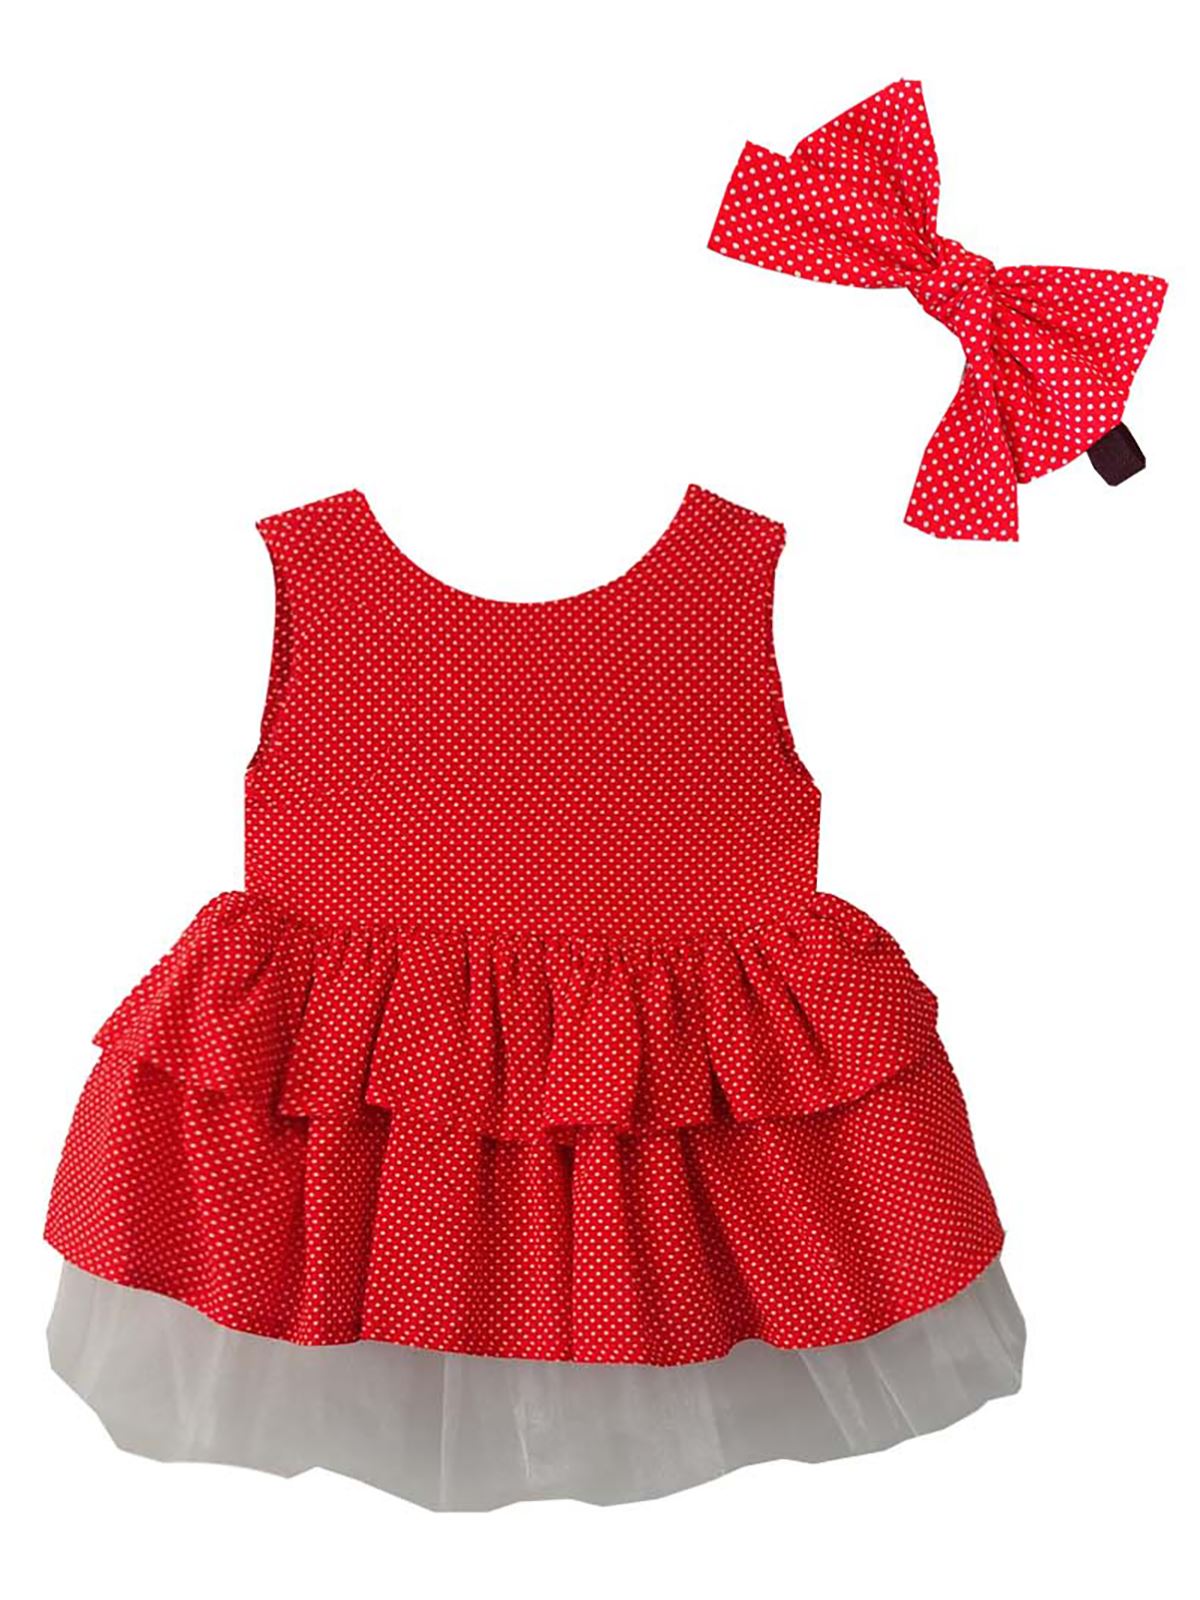 Shecco Babba Puantiyeli Fiyonklu Kız Çocuk Tütü Elbise Bandana Takım 6-10 Yaş Kırmızı